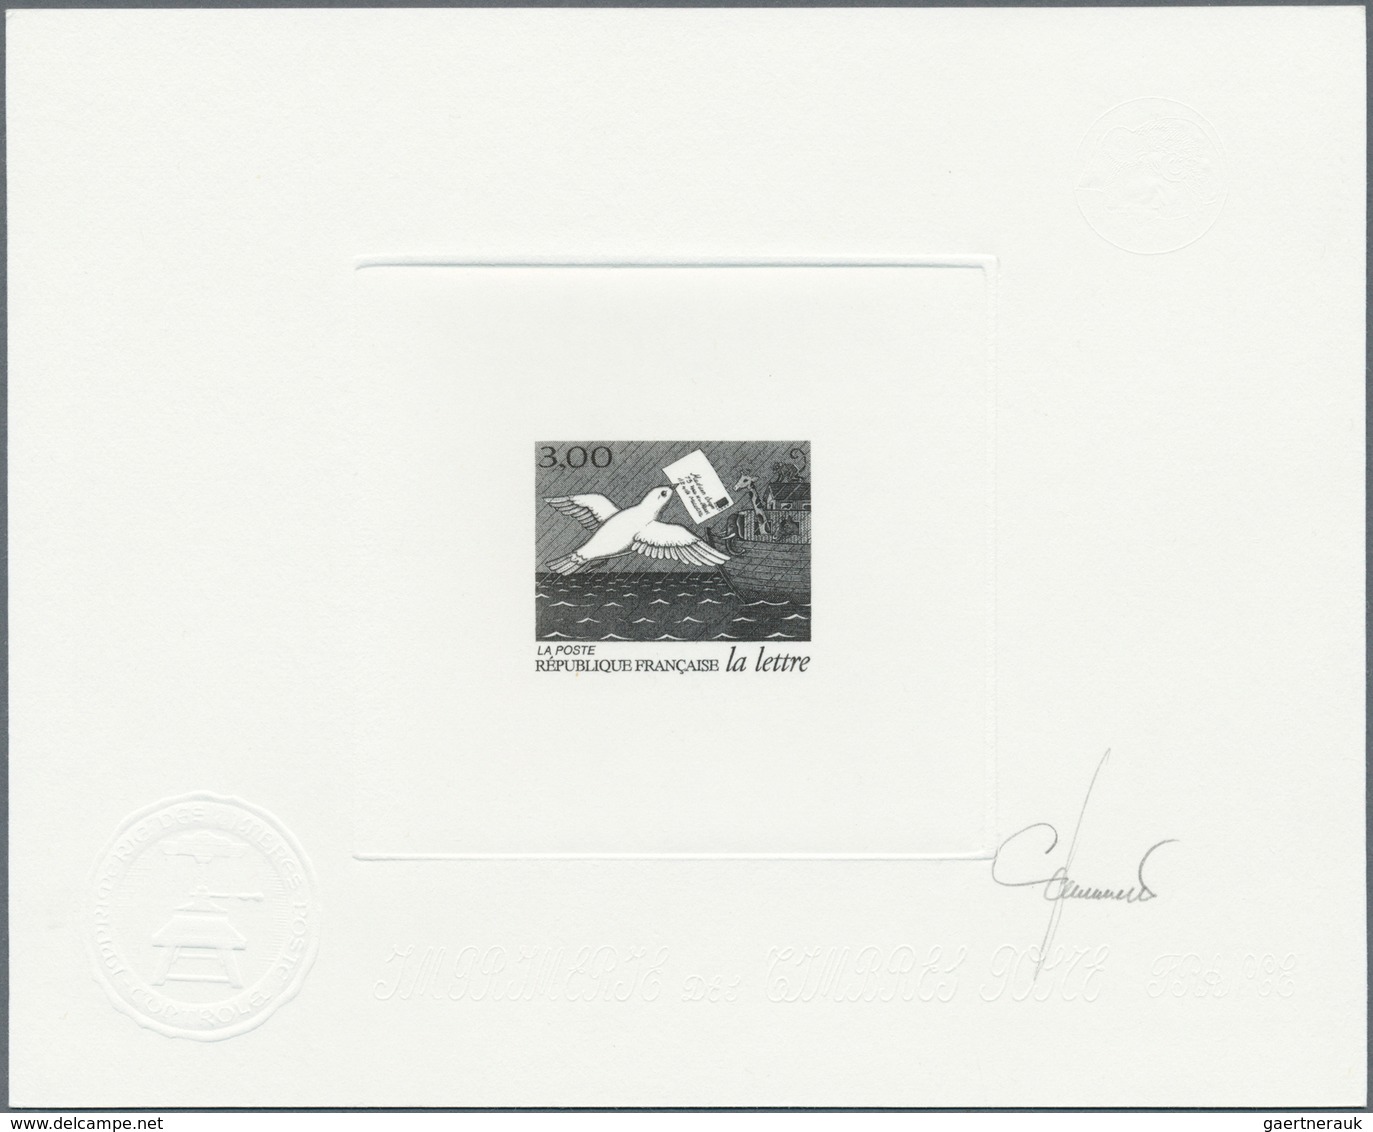 13909 Frankreich: 1998. Lot of 6 Epreuves d'artiste signée in black for complete set "Historic Letters". (